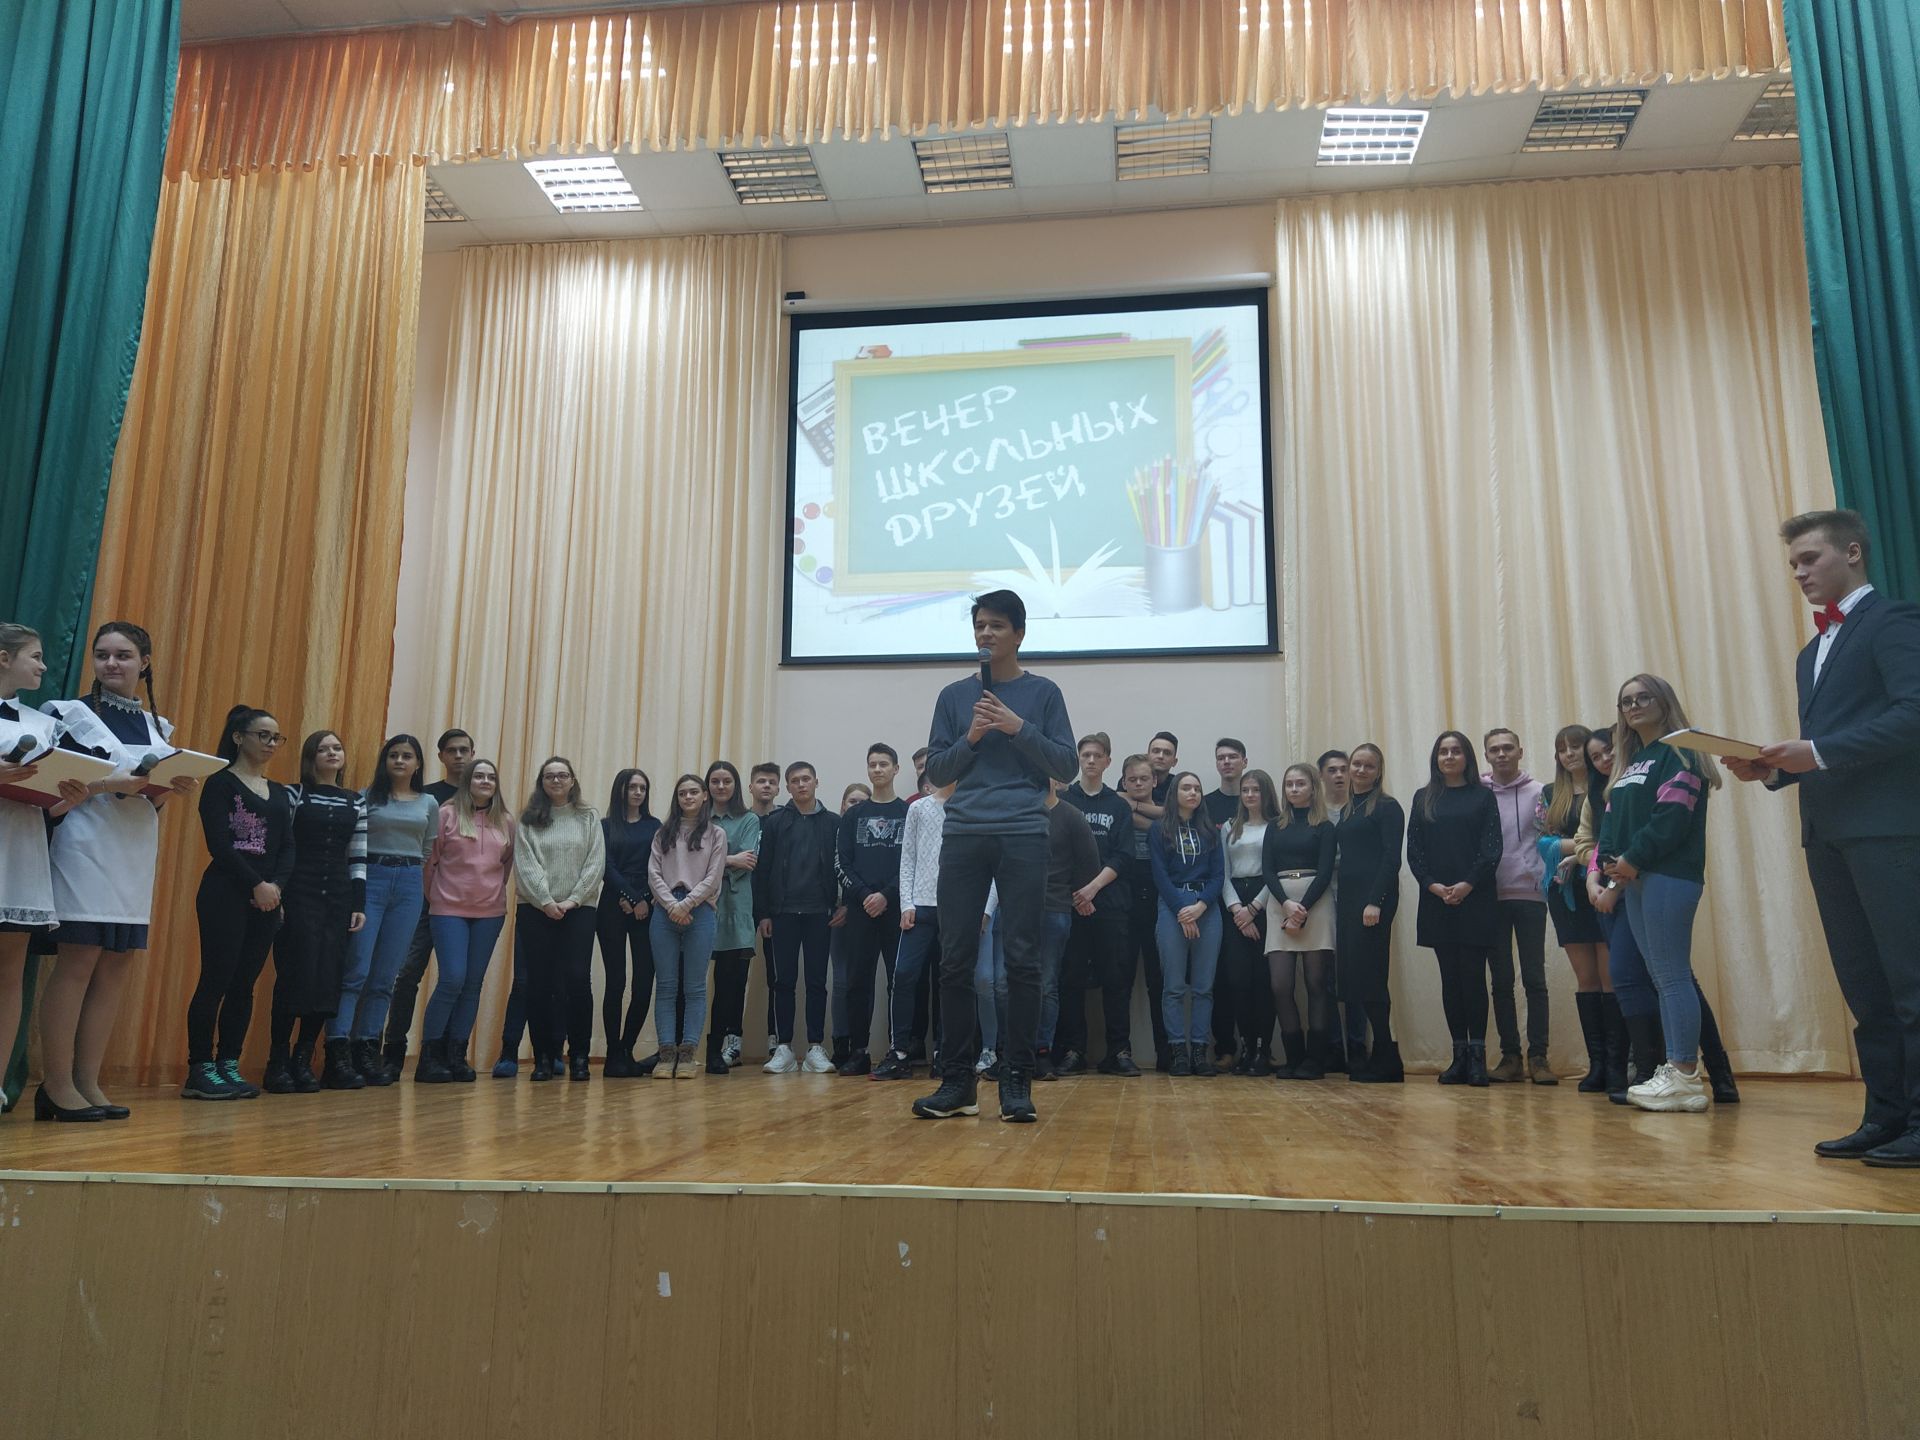 В Камских Полянах в школе №1 состоялся вечер встречи выпускников